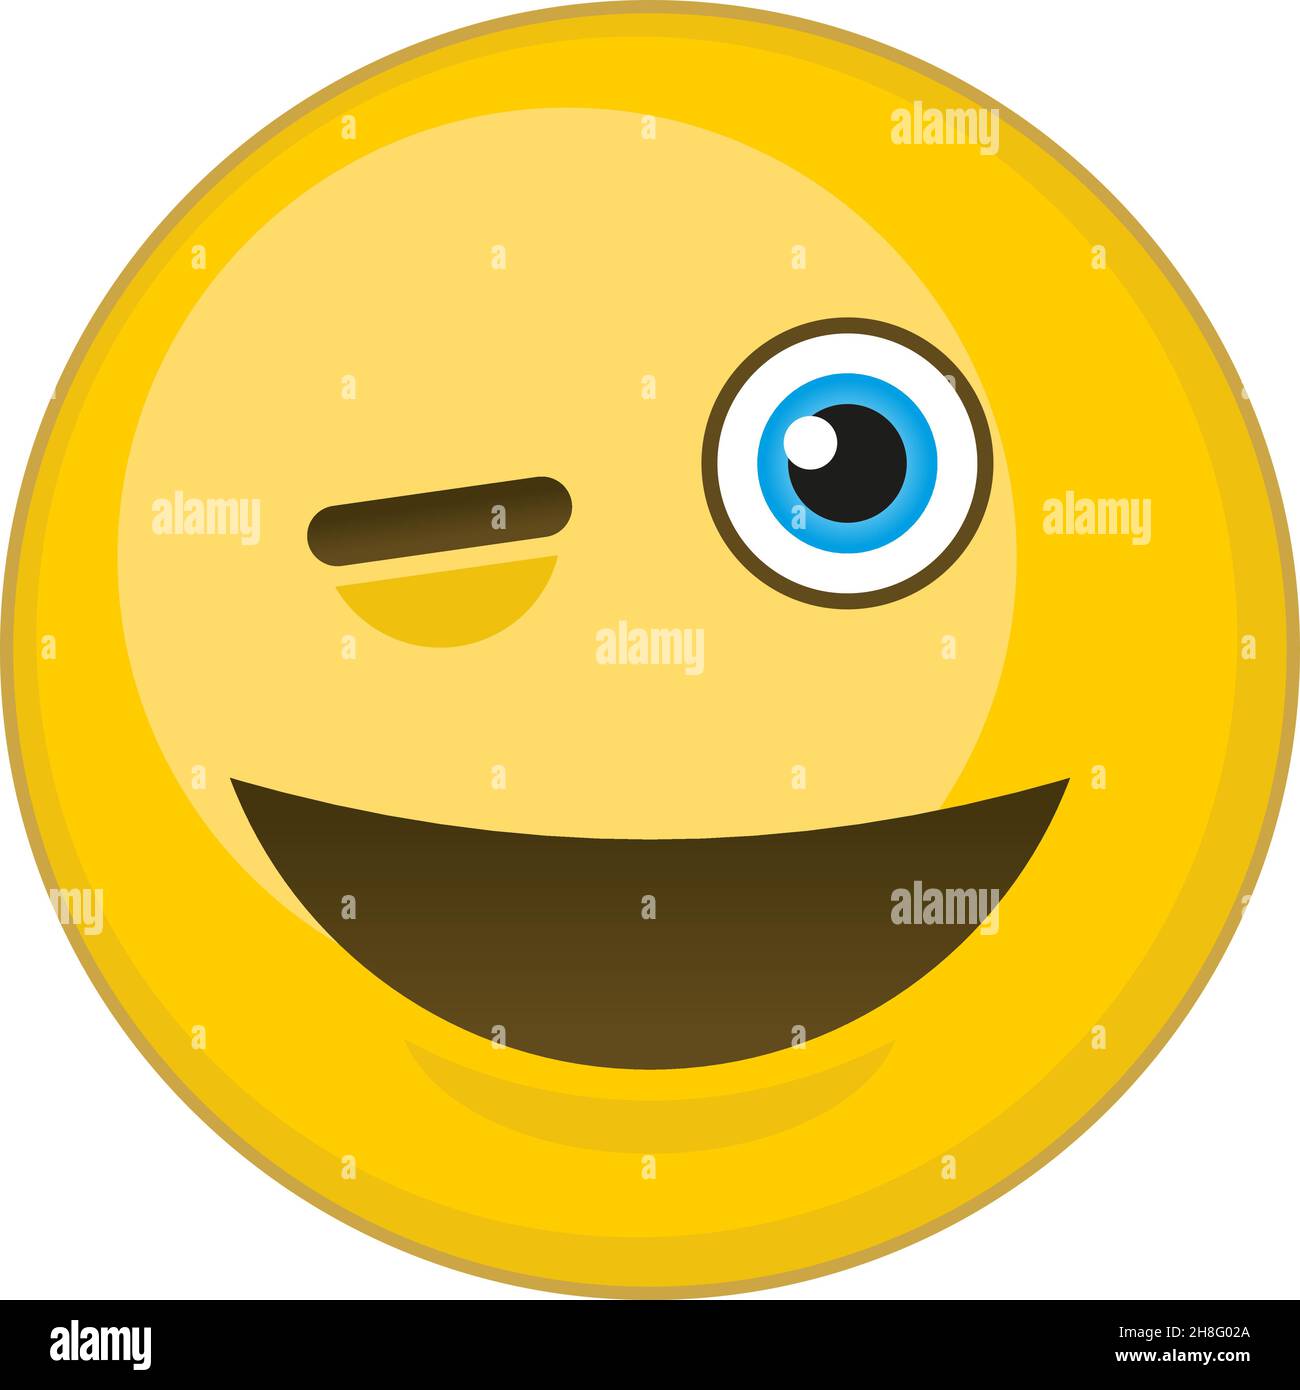 Zwinkerte Emoticon. Cartoon gelbe Kugel mit Augenzwinkern Stock Vektor